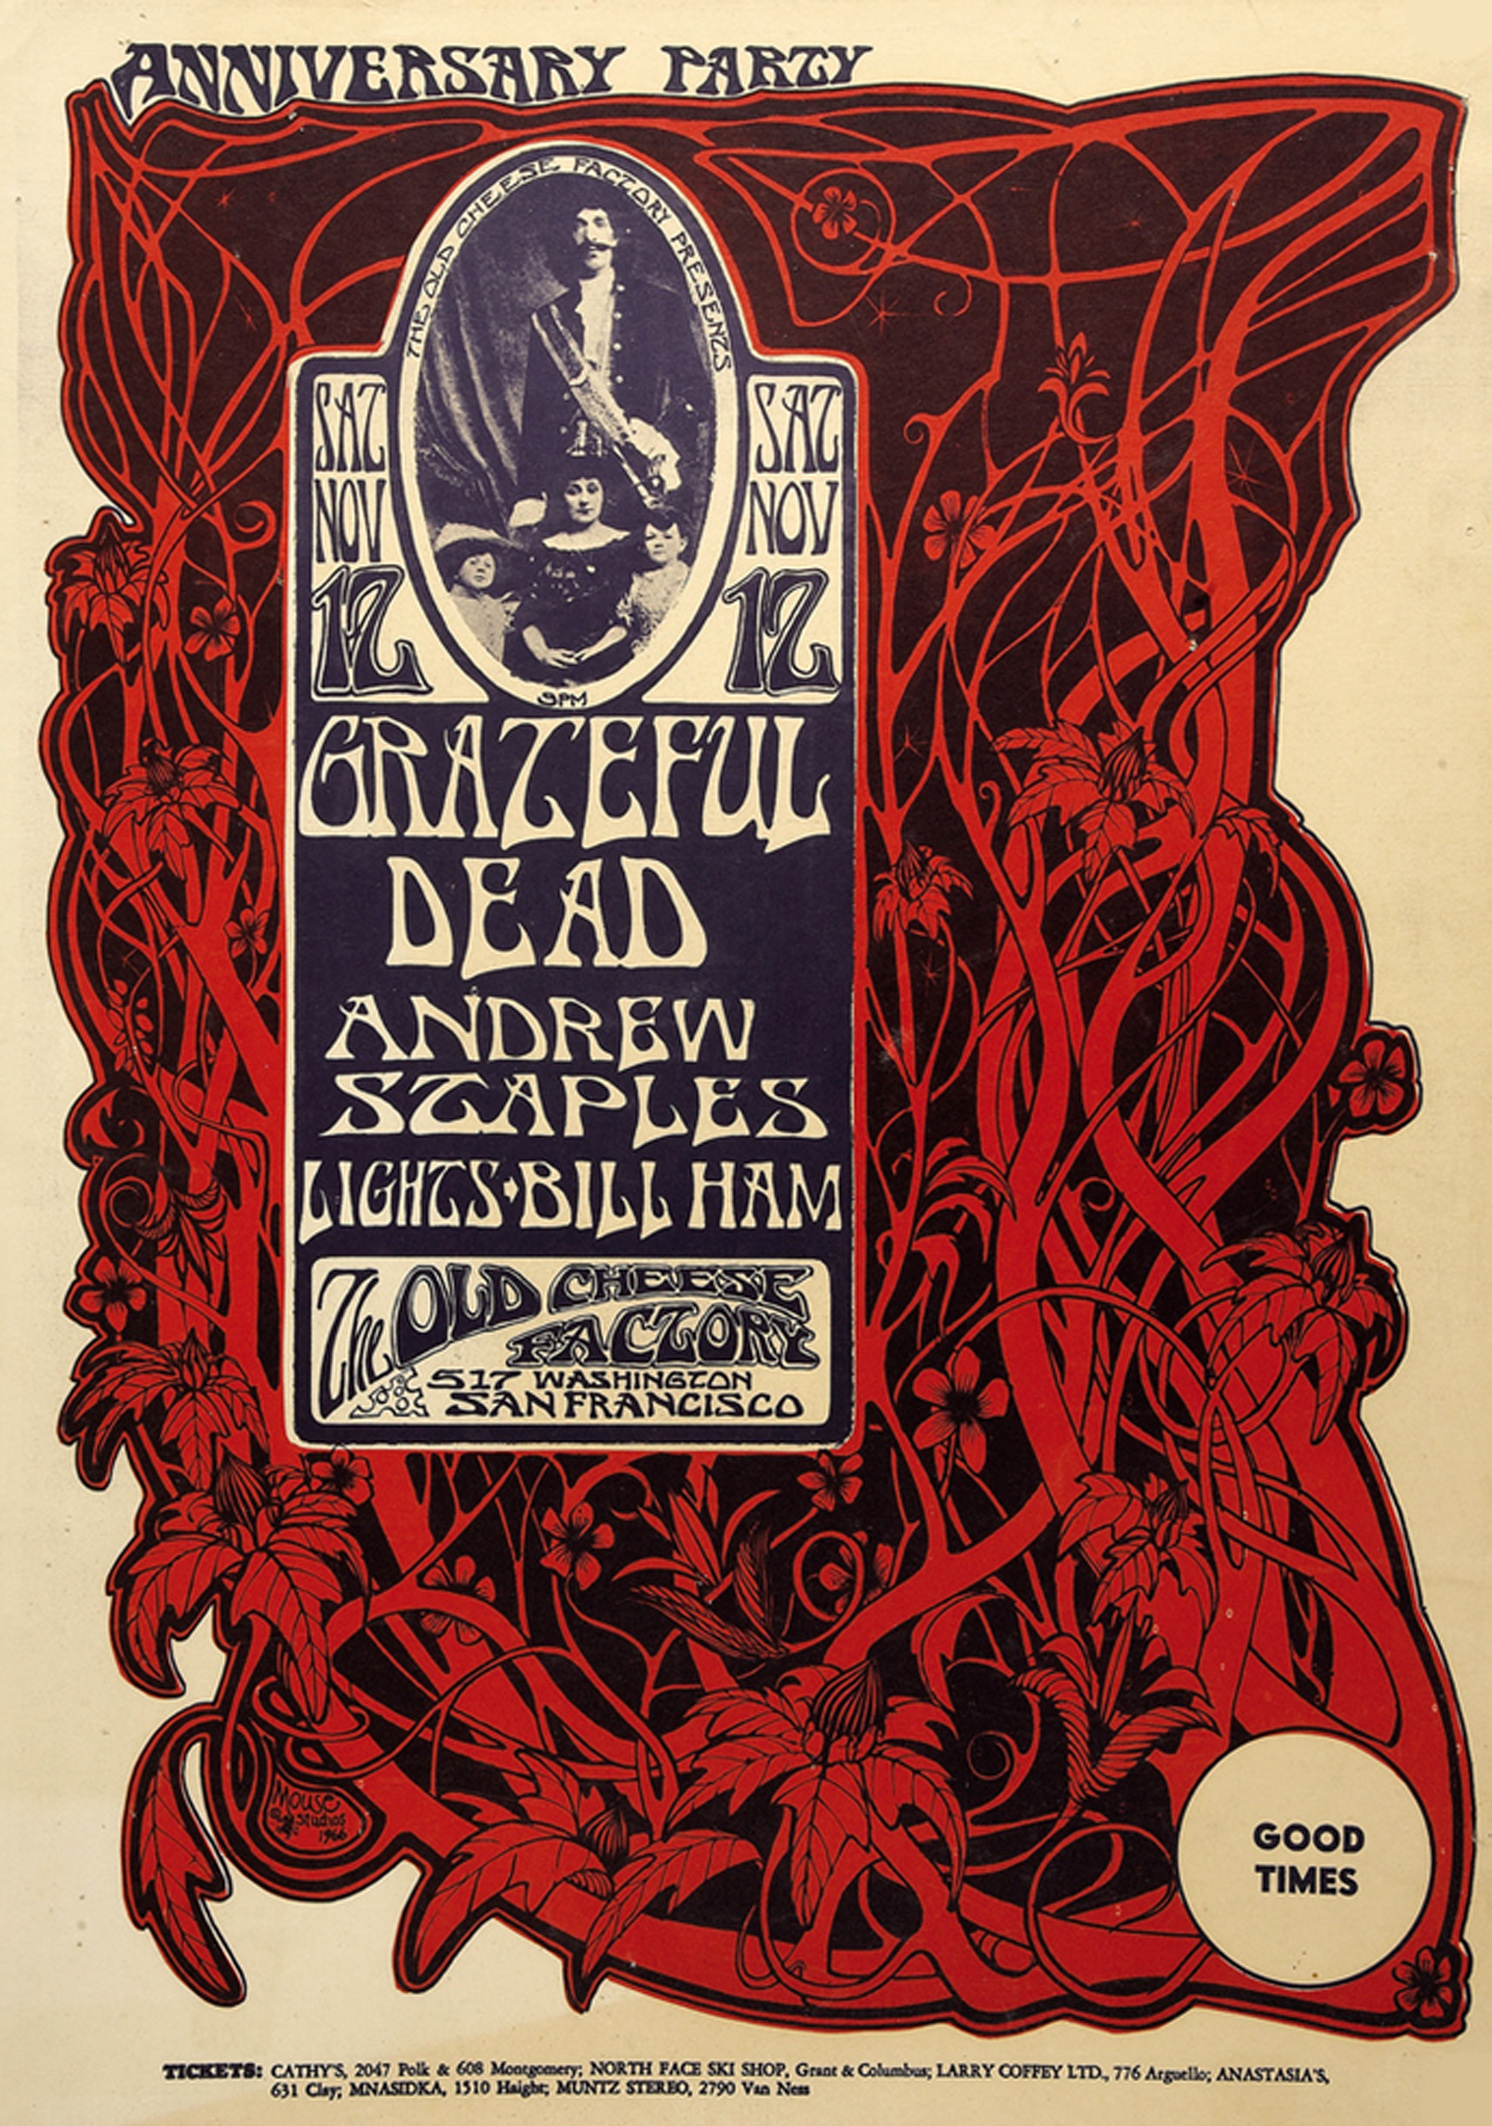 Grateful Dead 1966 (2)